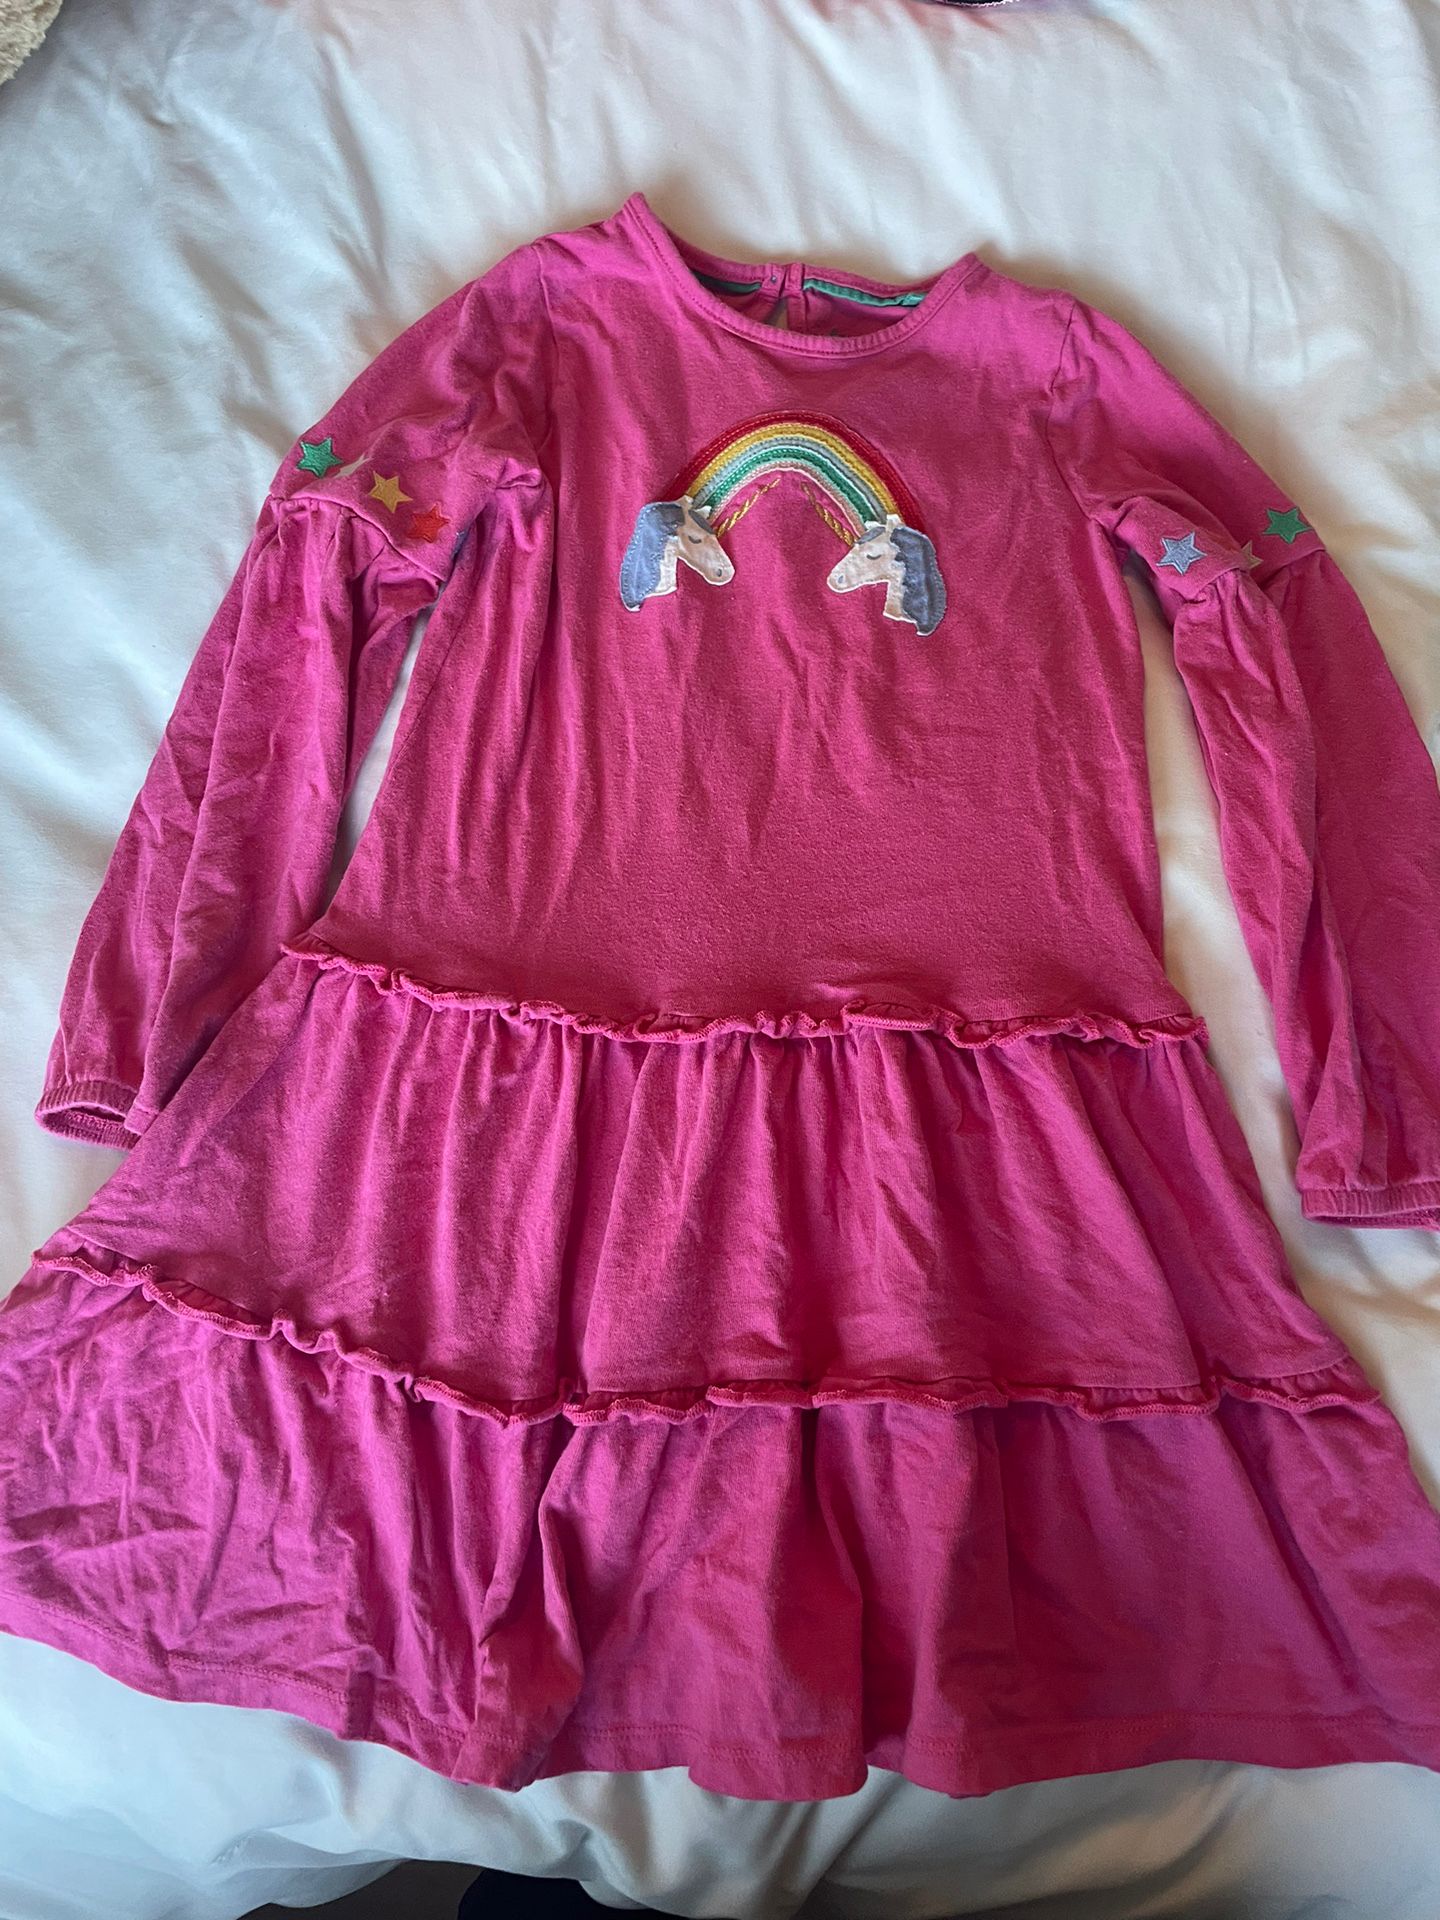 Pink Unicorn Dress Girls Size 7-8